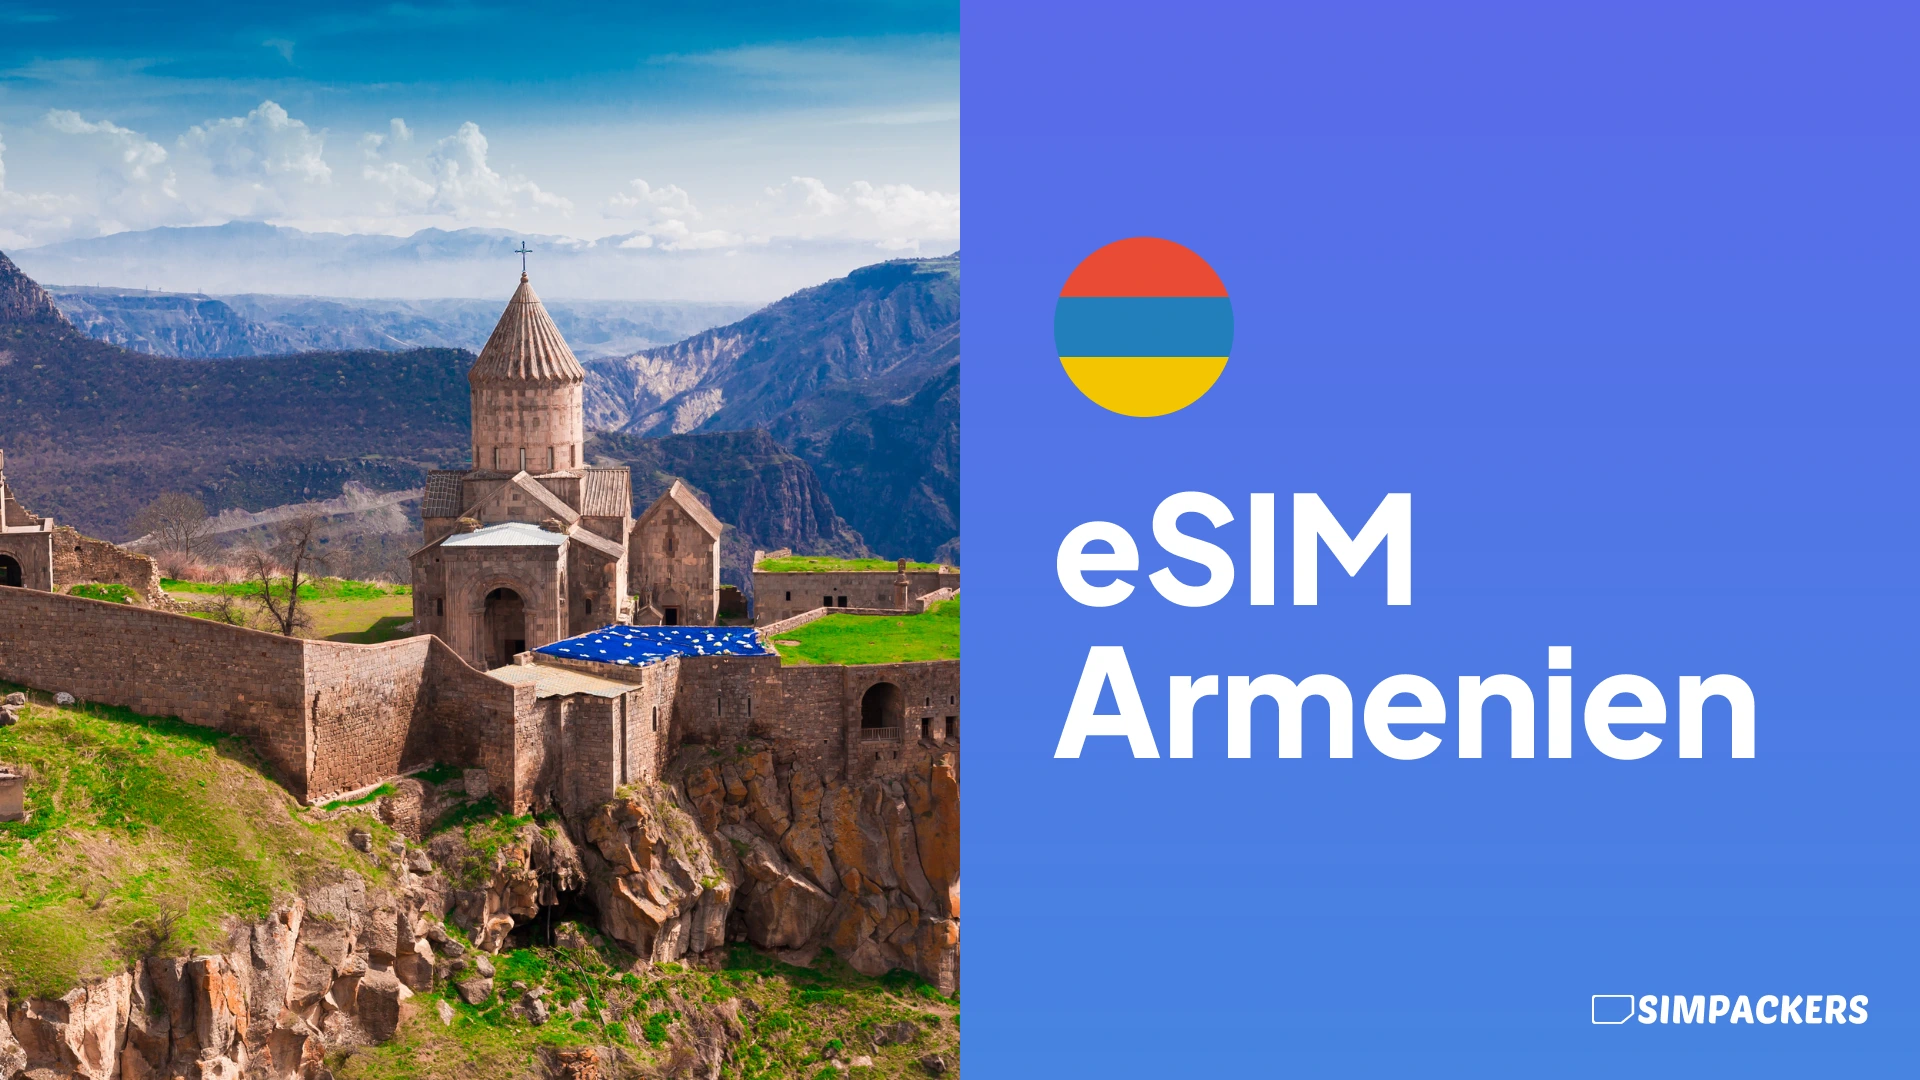 DE/FEATURED_IMAGES/esim-armenien.webp